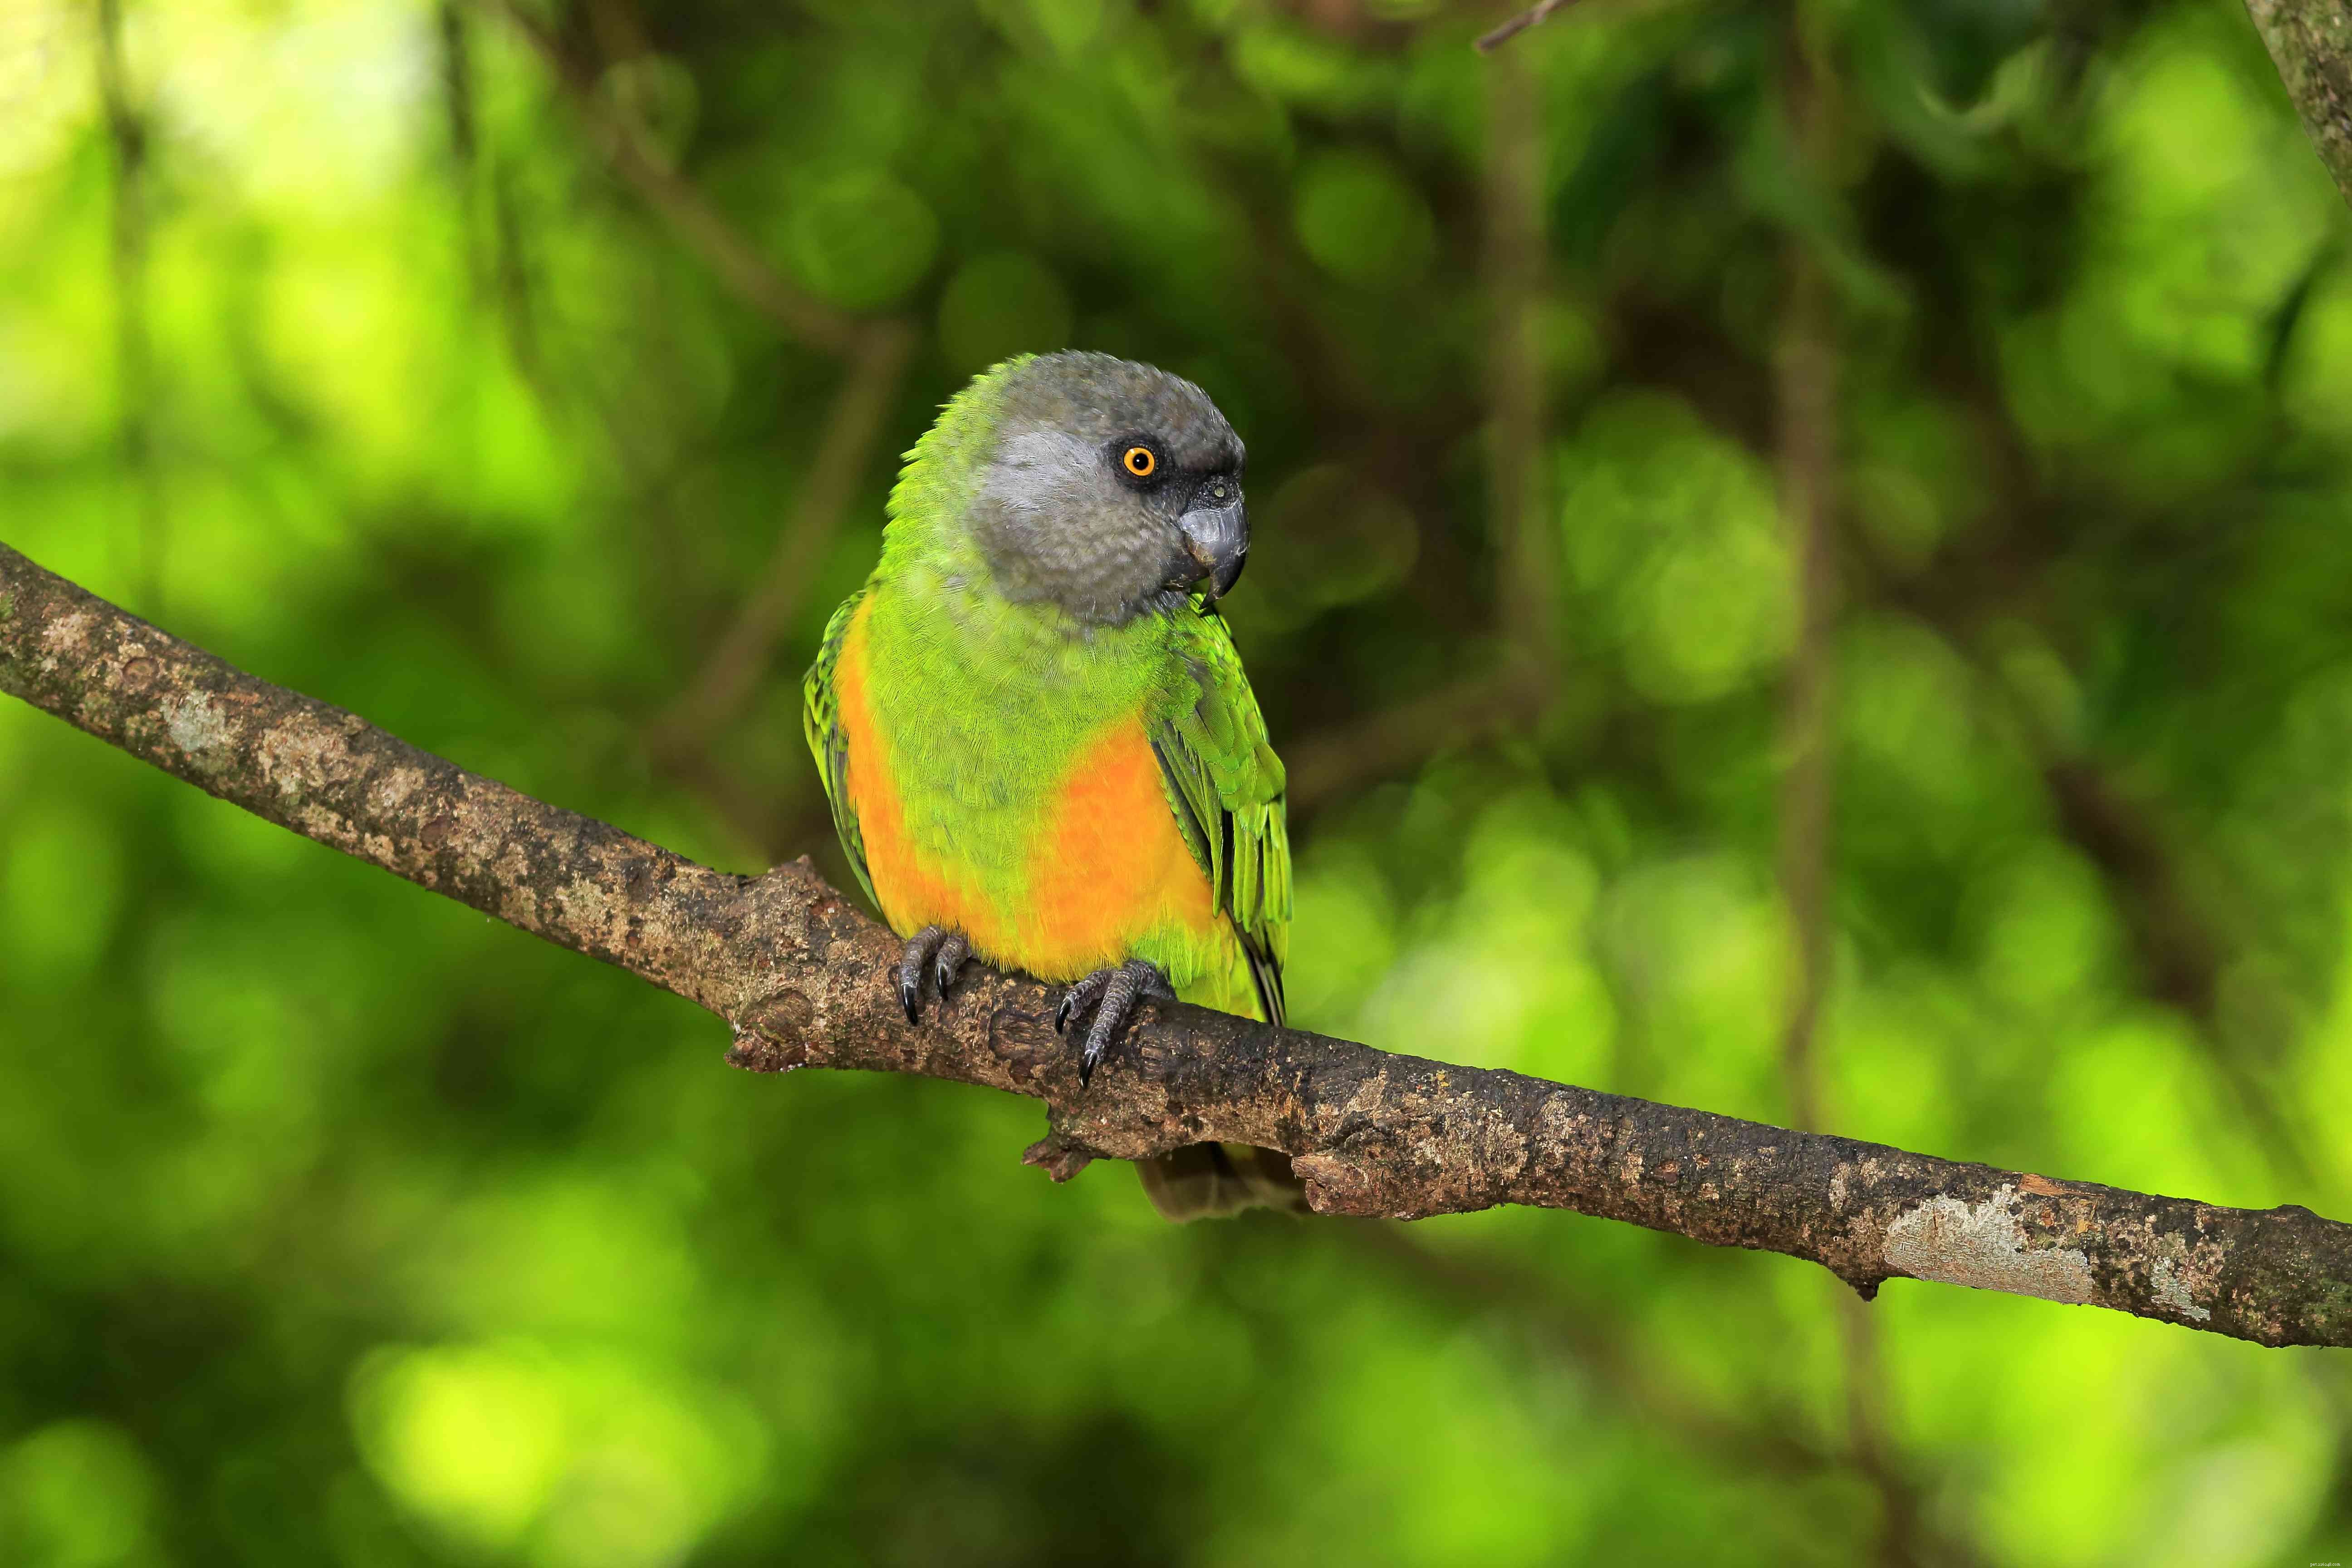 8 beste middelgrote papegaaien om als huisdier te houden